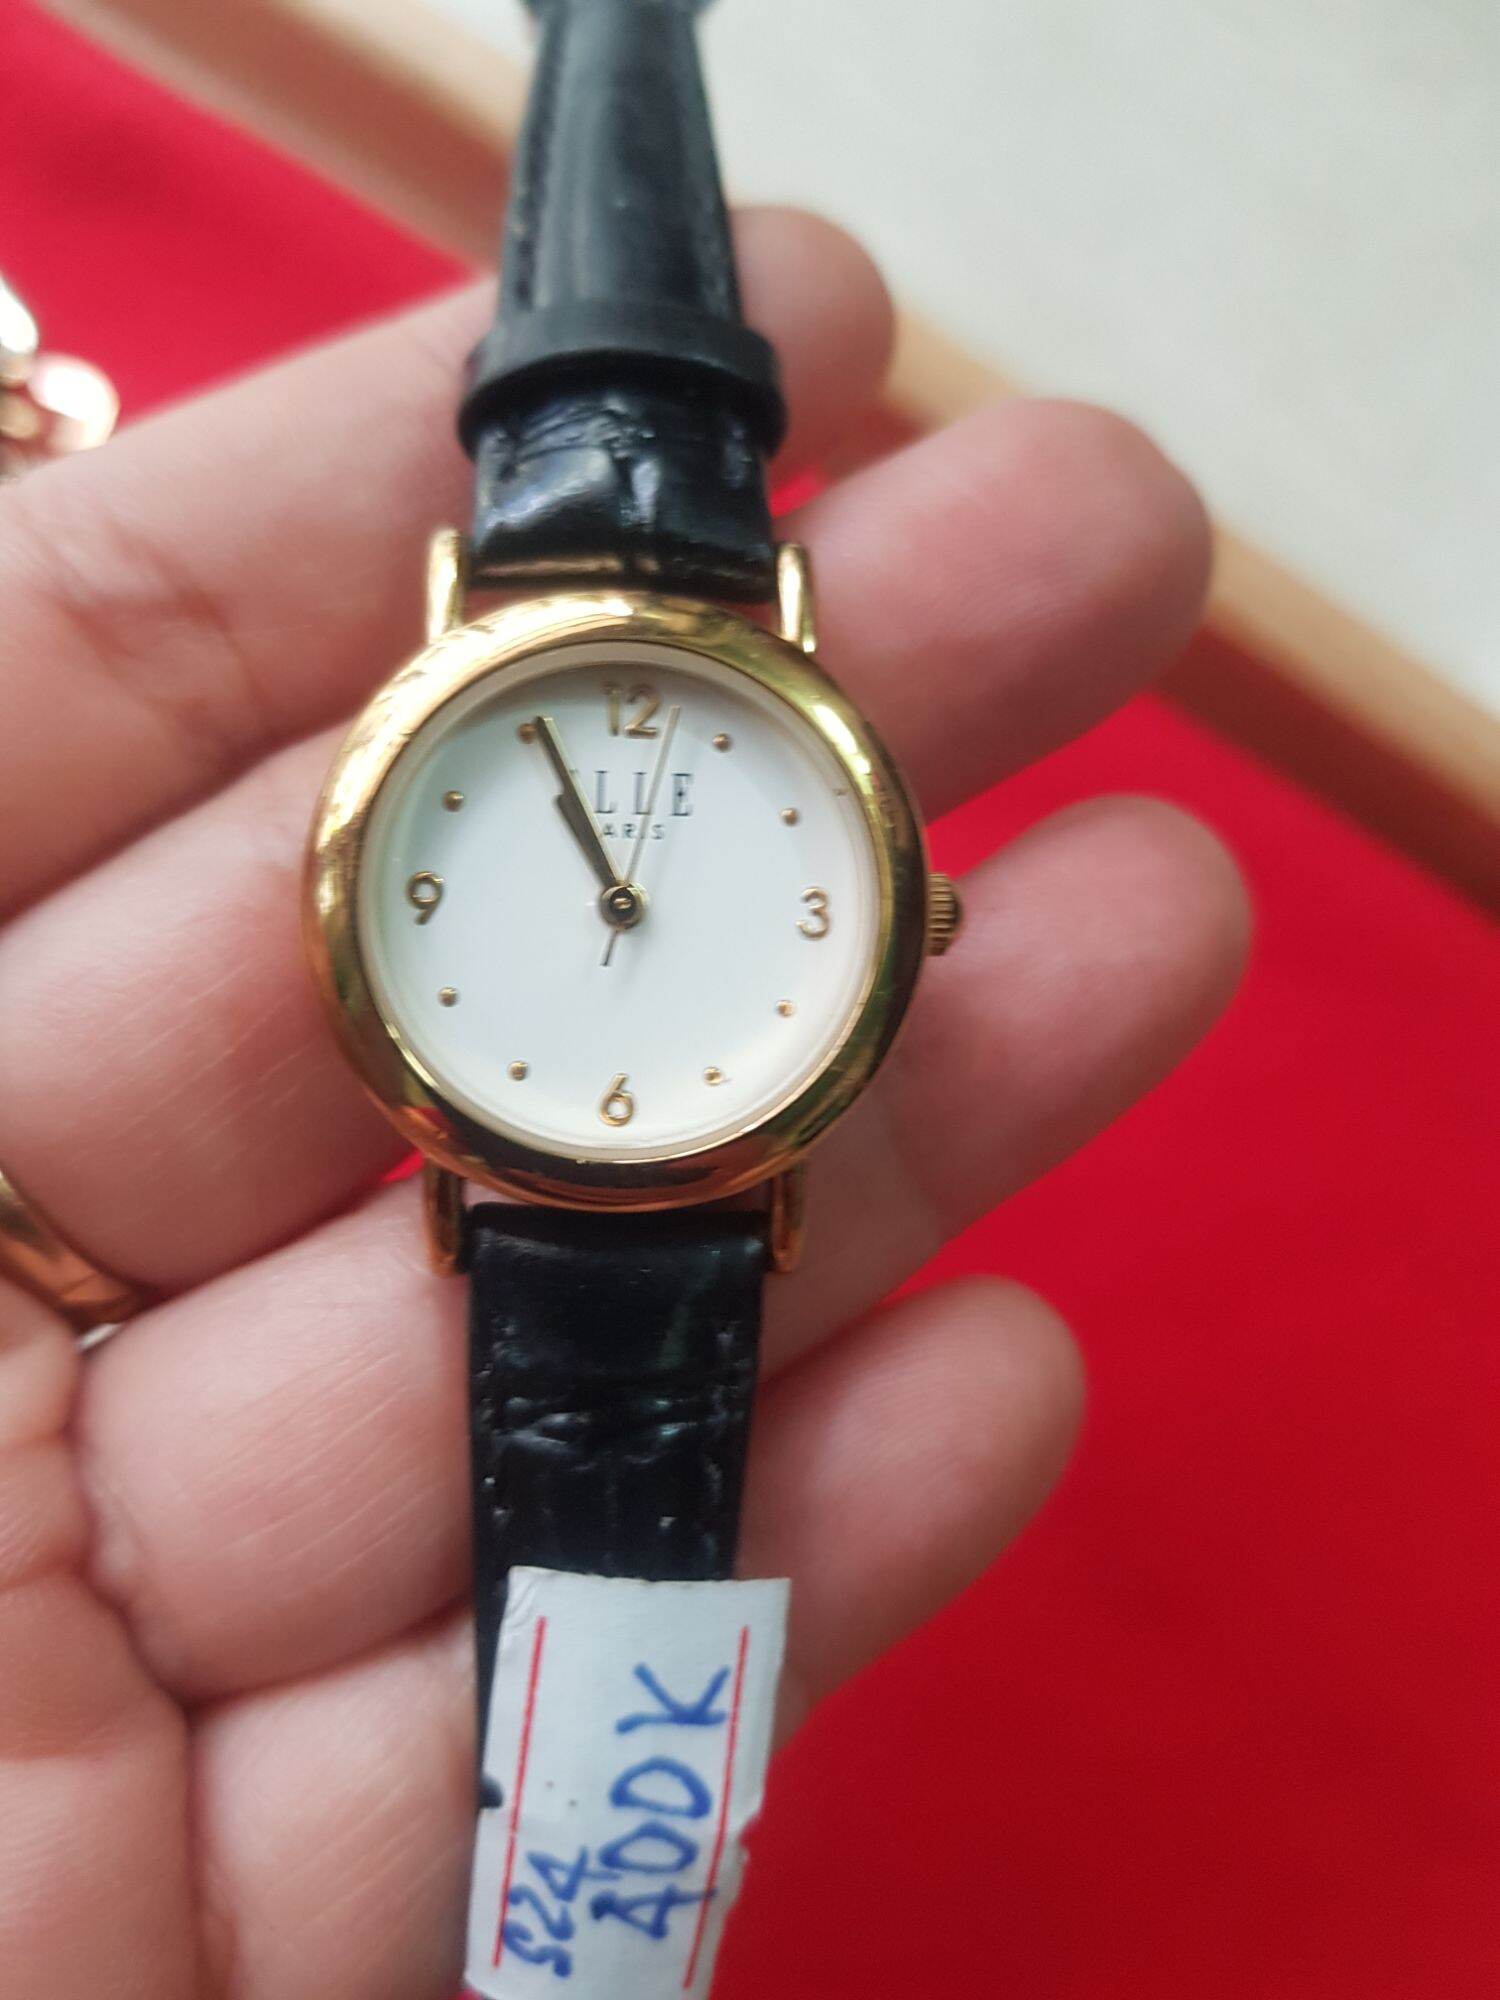 Đồng hồ nữ, si Nhật hiệu ELLE mặt tròn ,size mặt 24mm, độ mới trên 90%